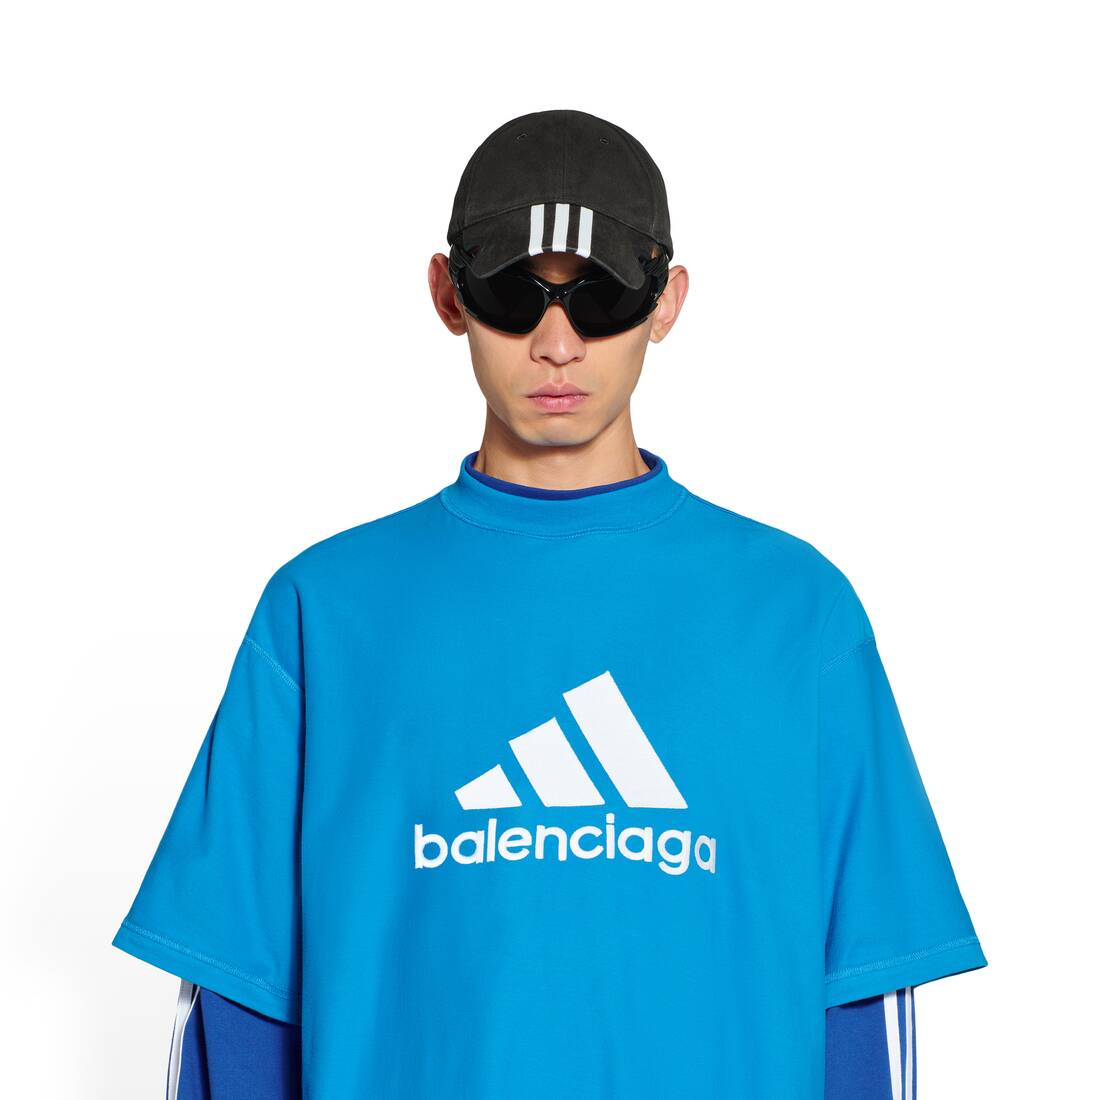 Men's Balenciaga / Adidas Cap in Black